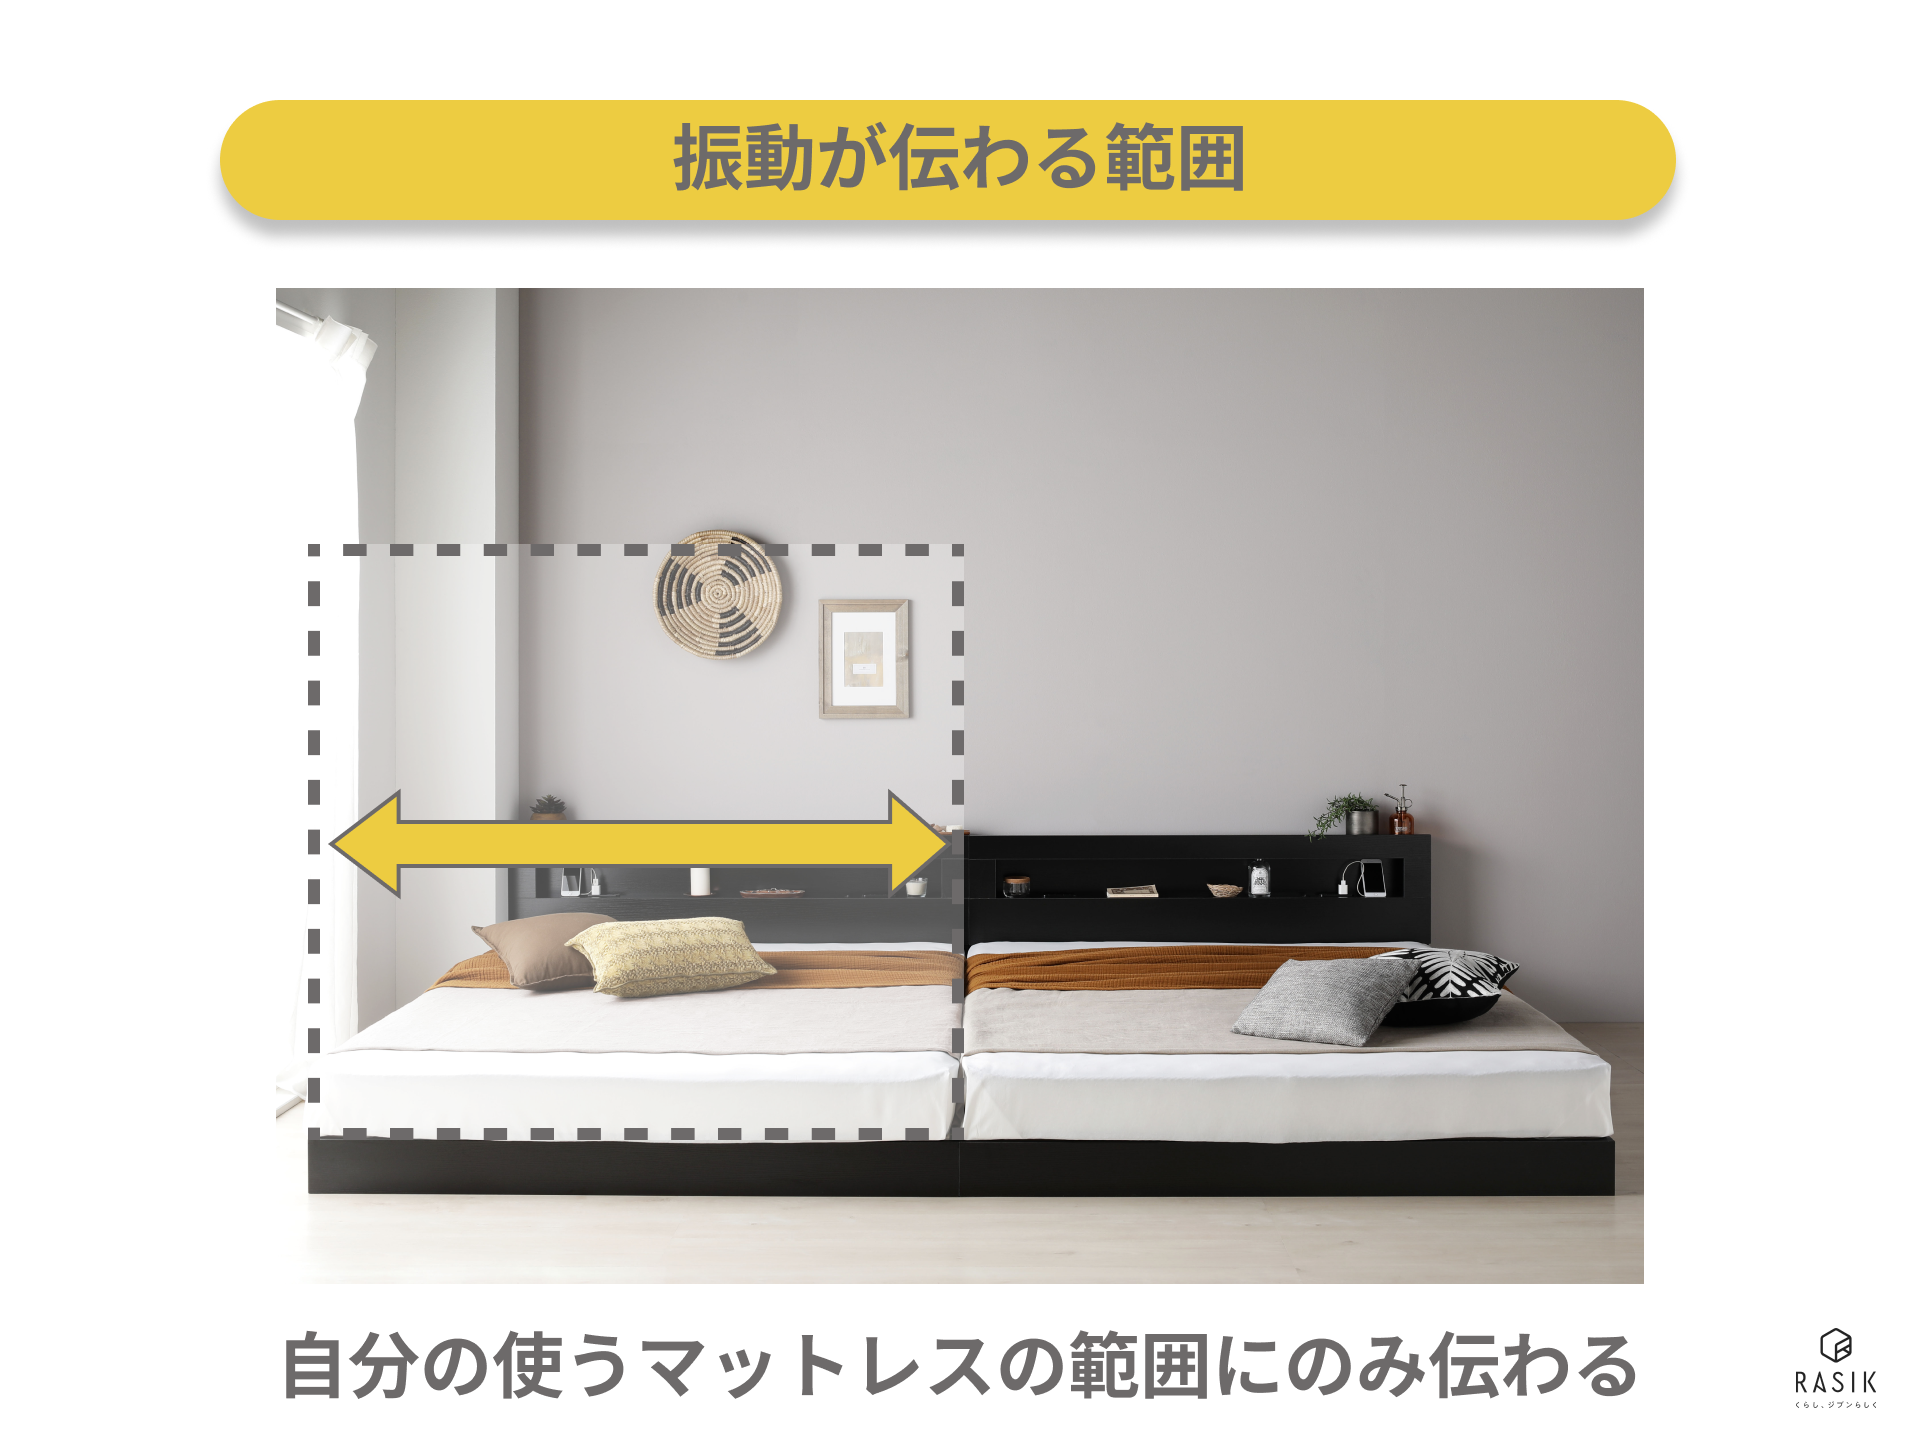 ベッドの振動が伝わる範囲を示した画像